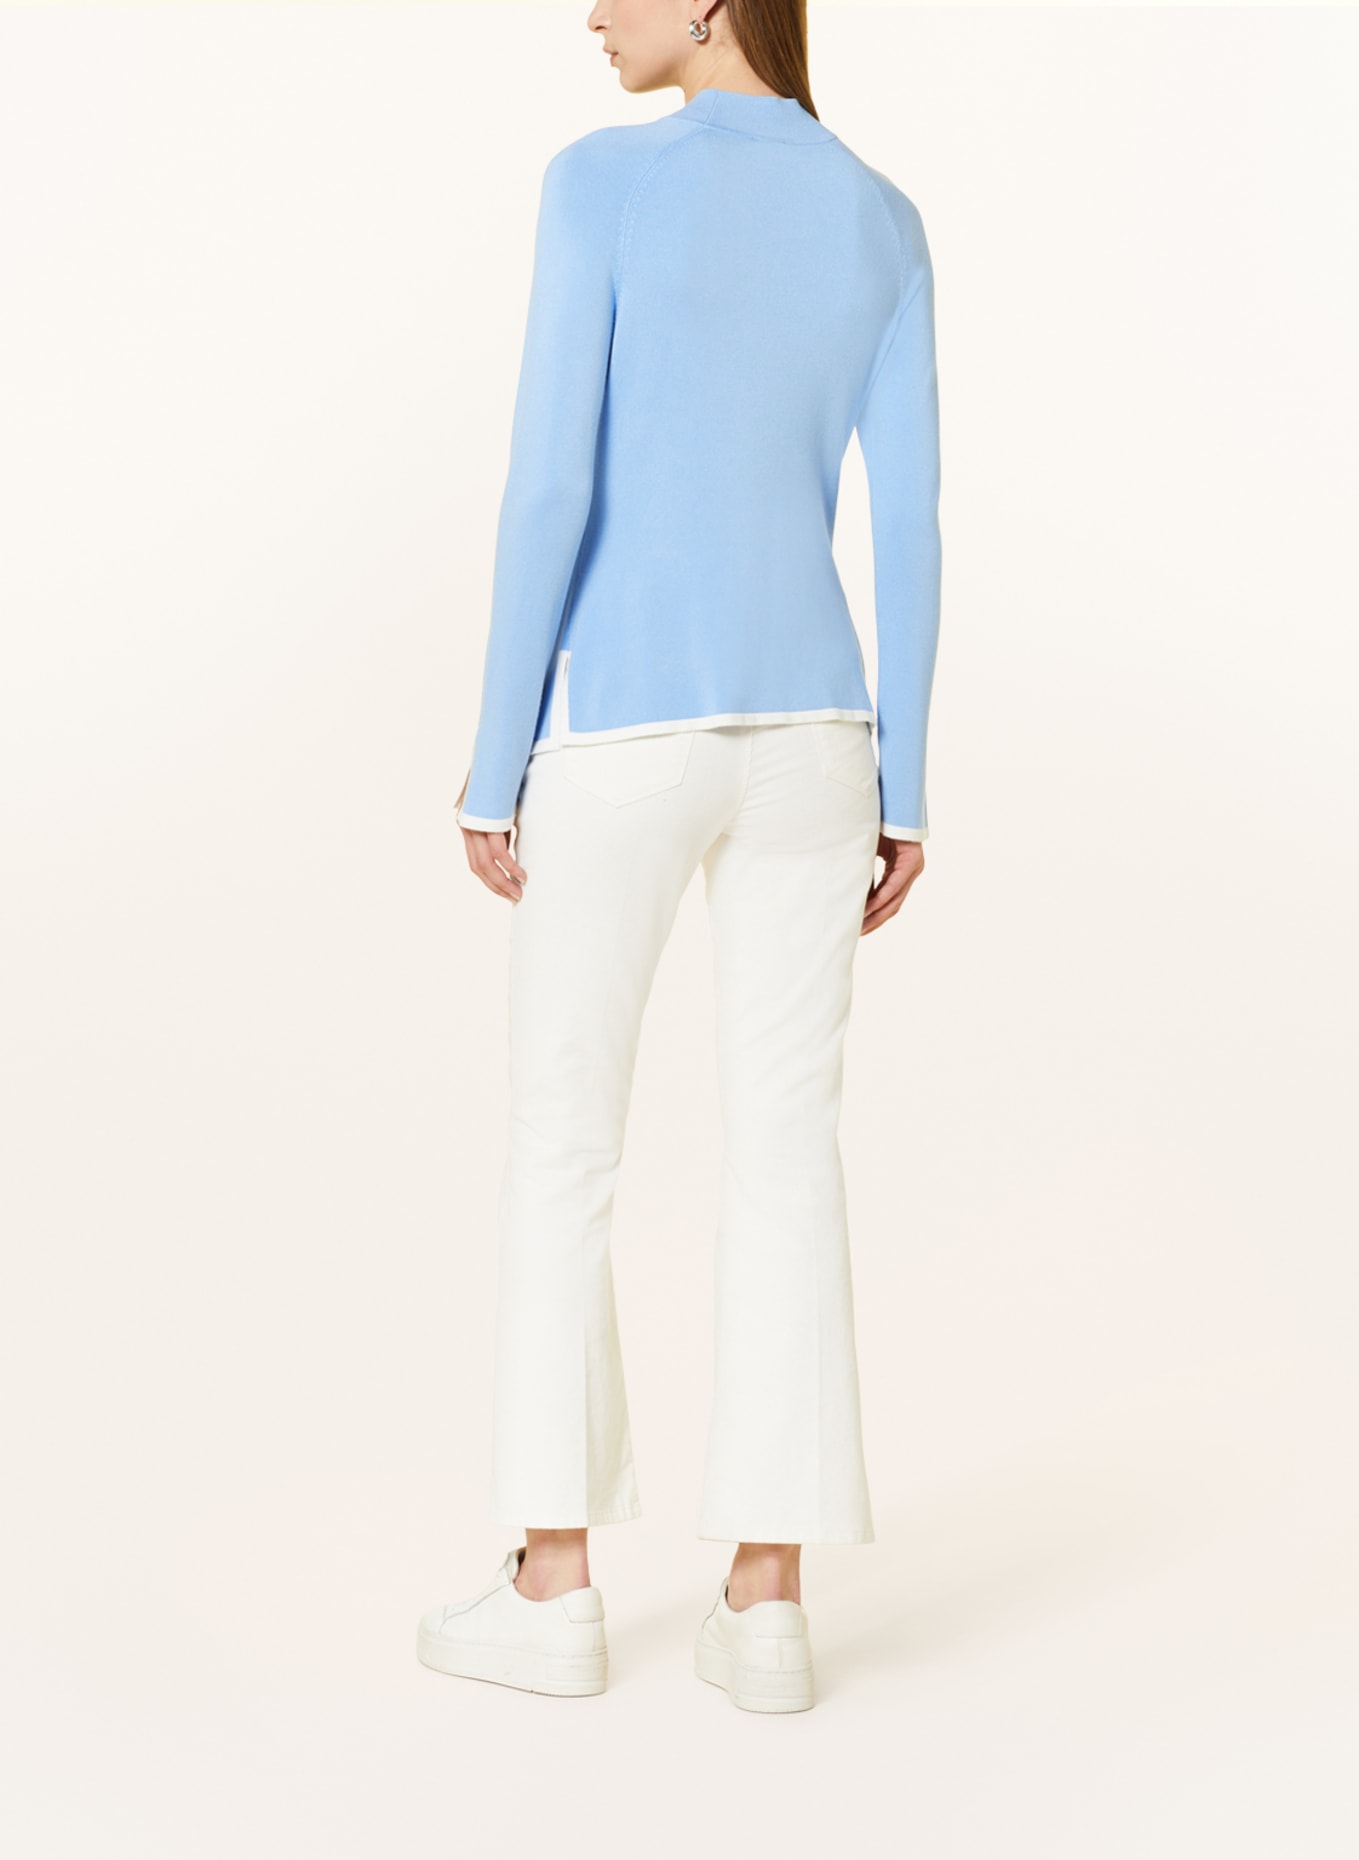 s.Oliver BLACK LABEL Sweater, Color: LIGHT BLUE/ WHITE (Image 3)